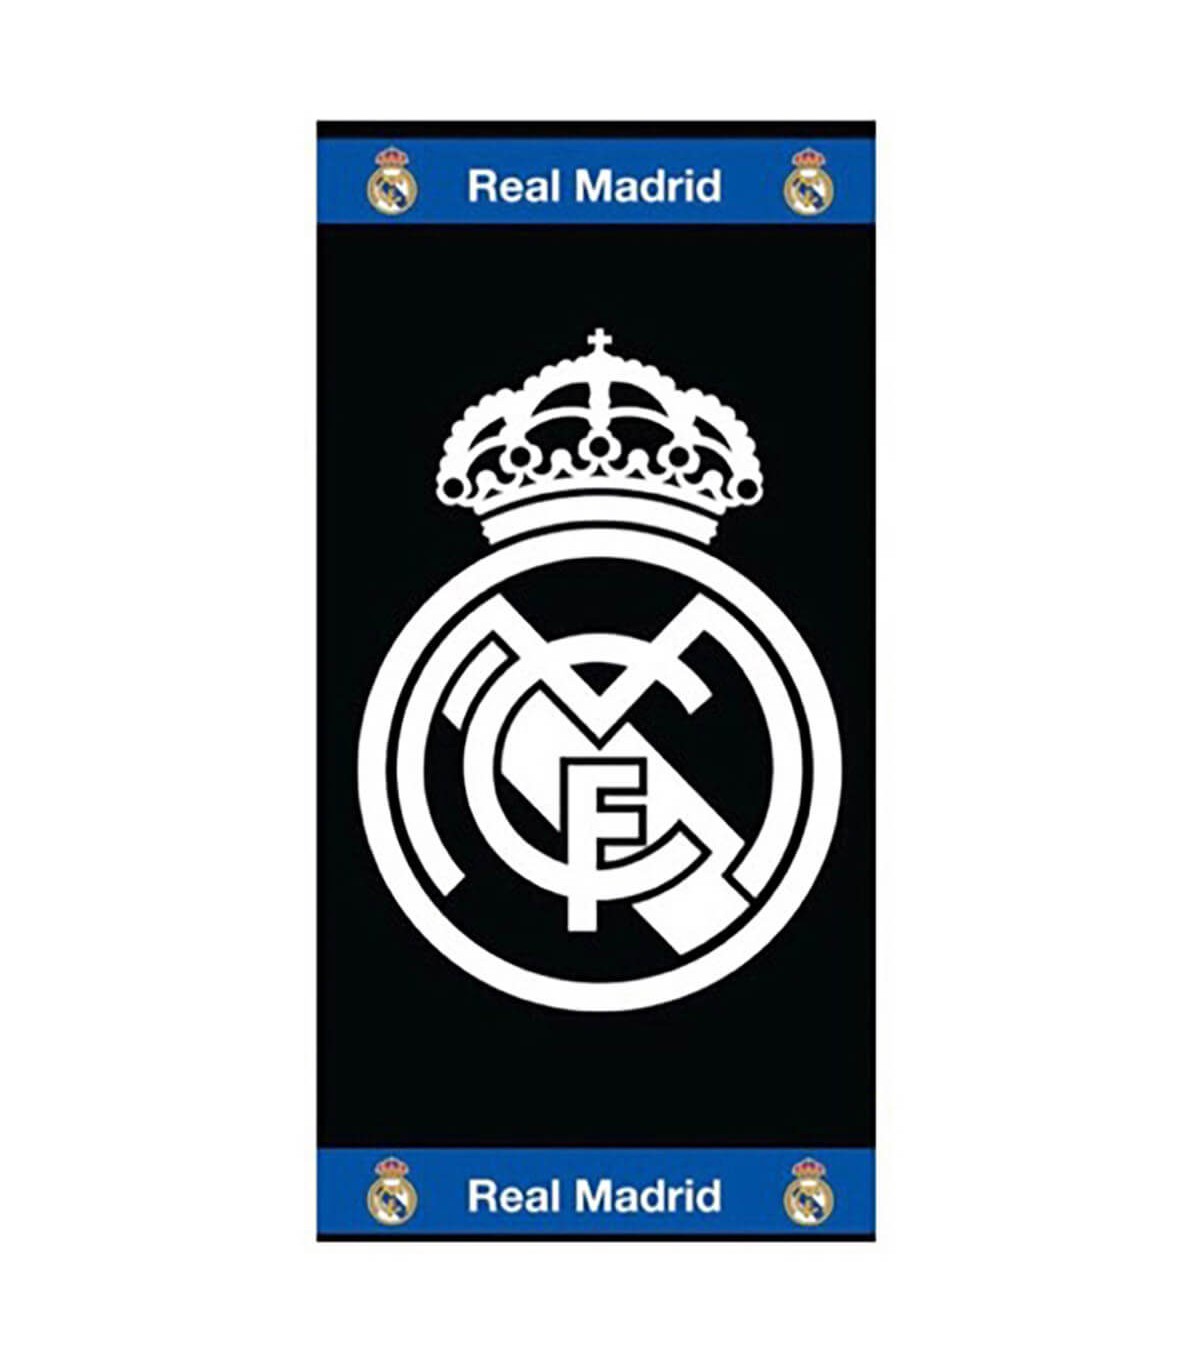 Toalla Real Madrid fondo blanco y azul